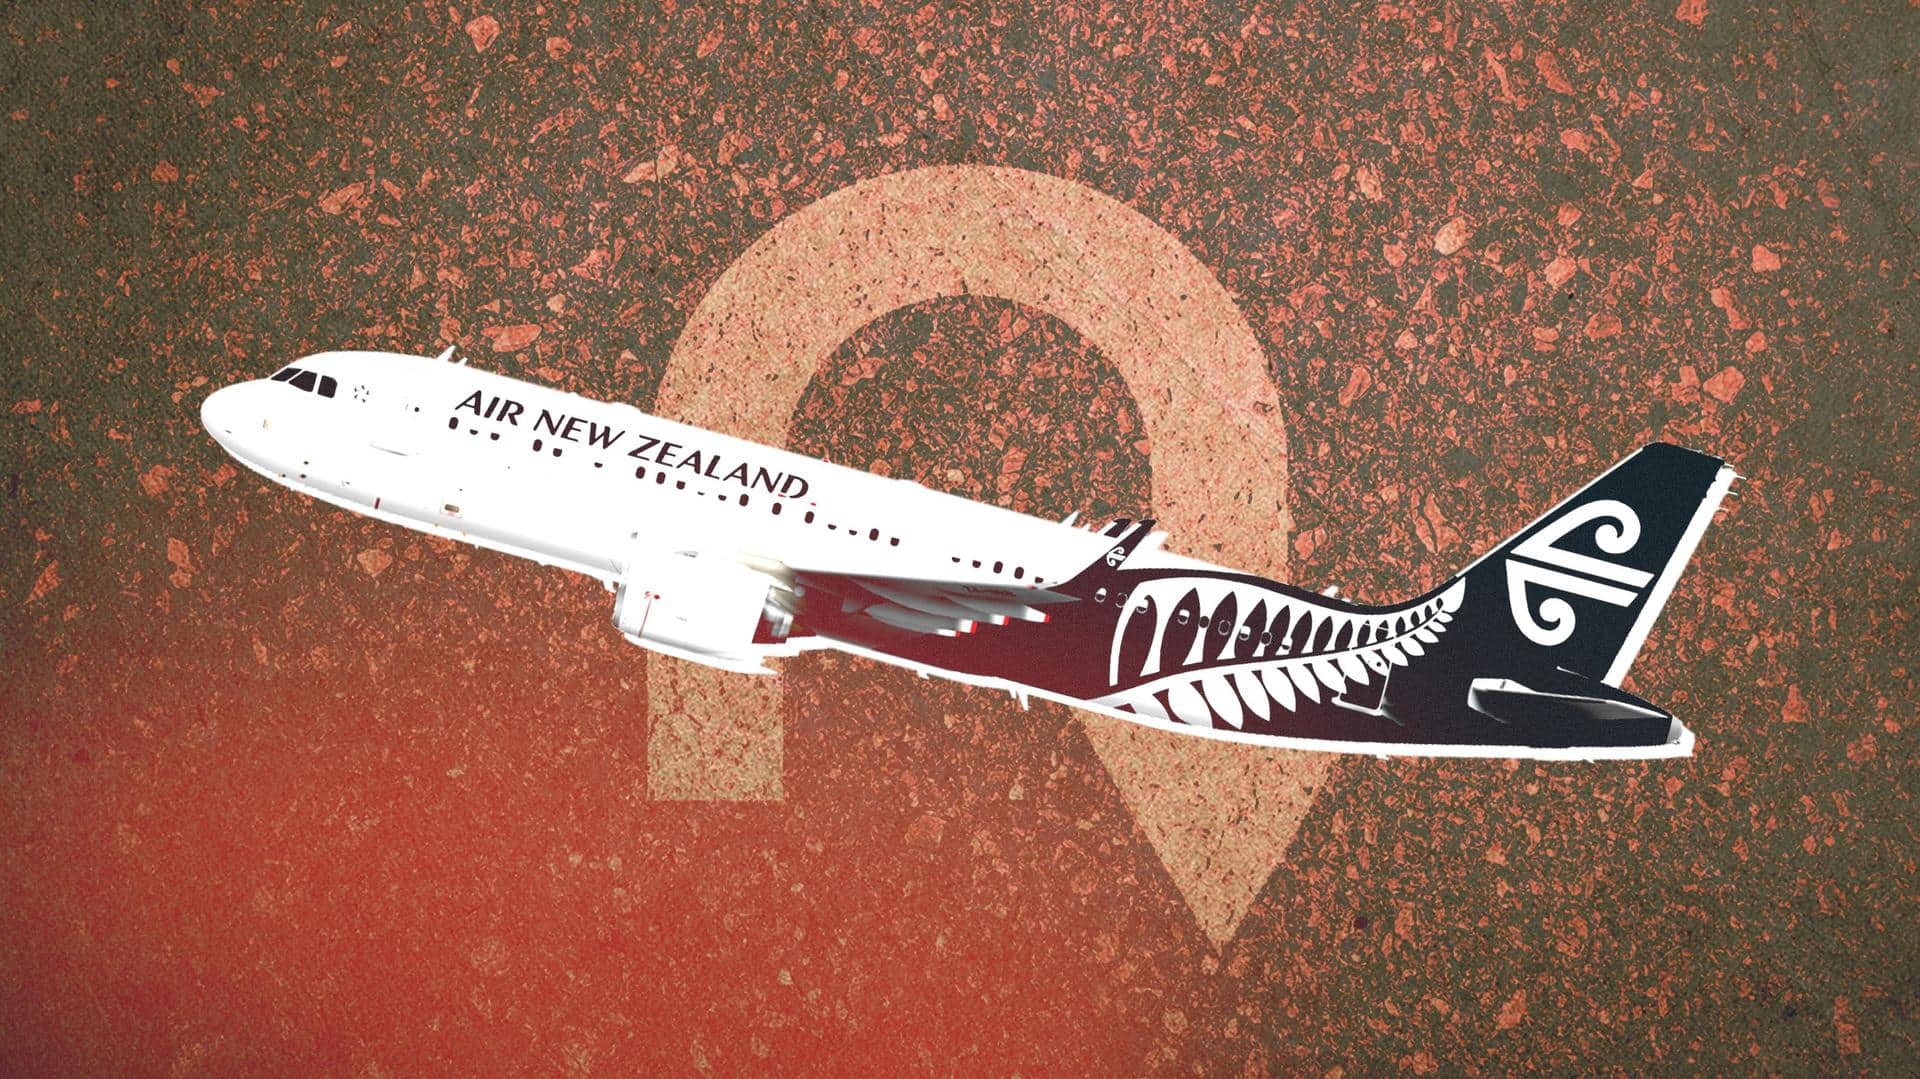 #WeirdNews: After 16 hours, Air New Zealand flight reaches nowhere